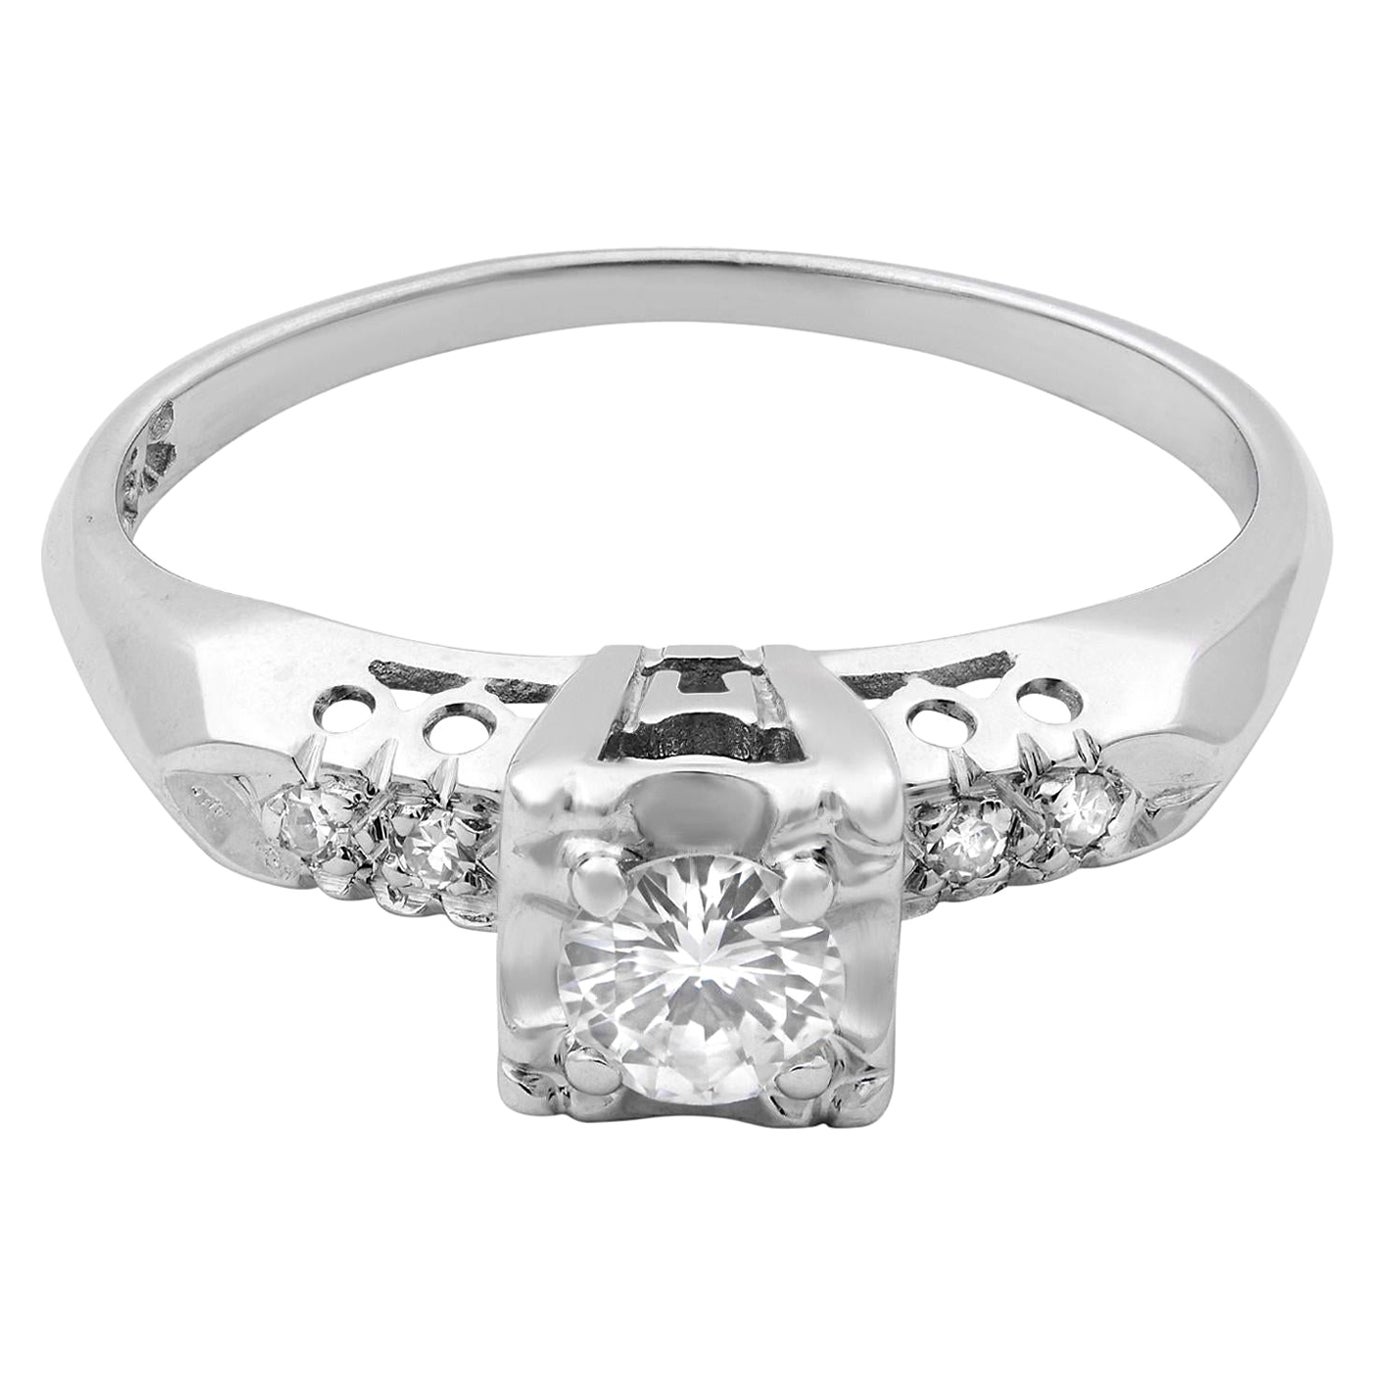 Rachel Koen 14 Karat White Gold Diamond Engagement Ring 0.25 Carat